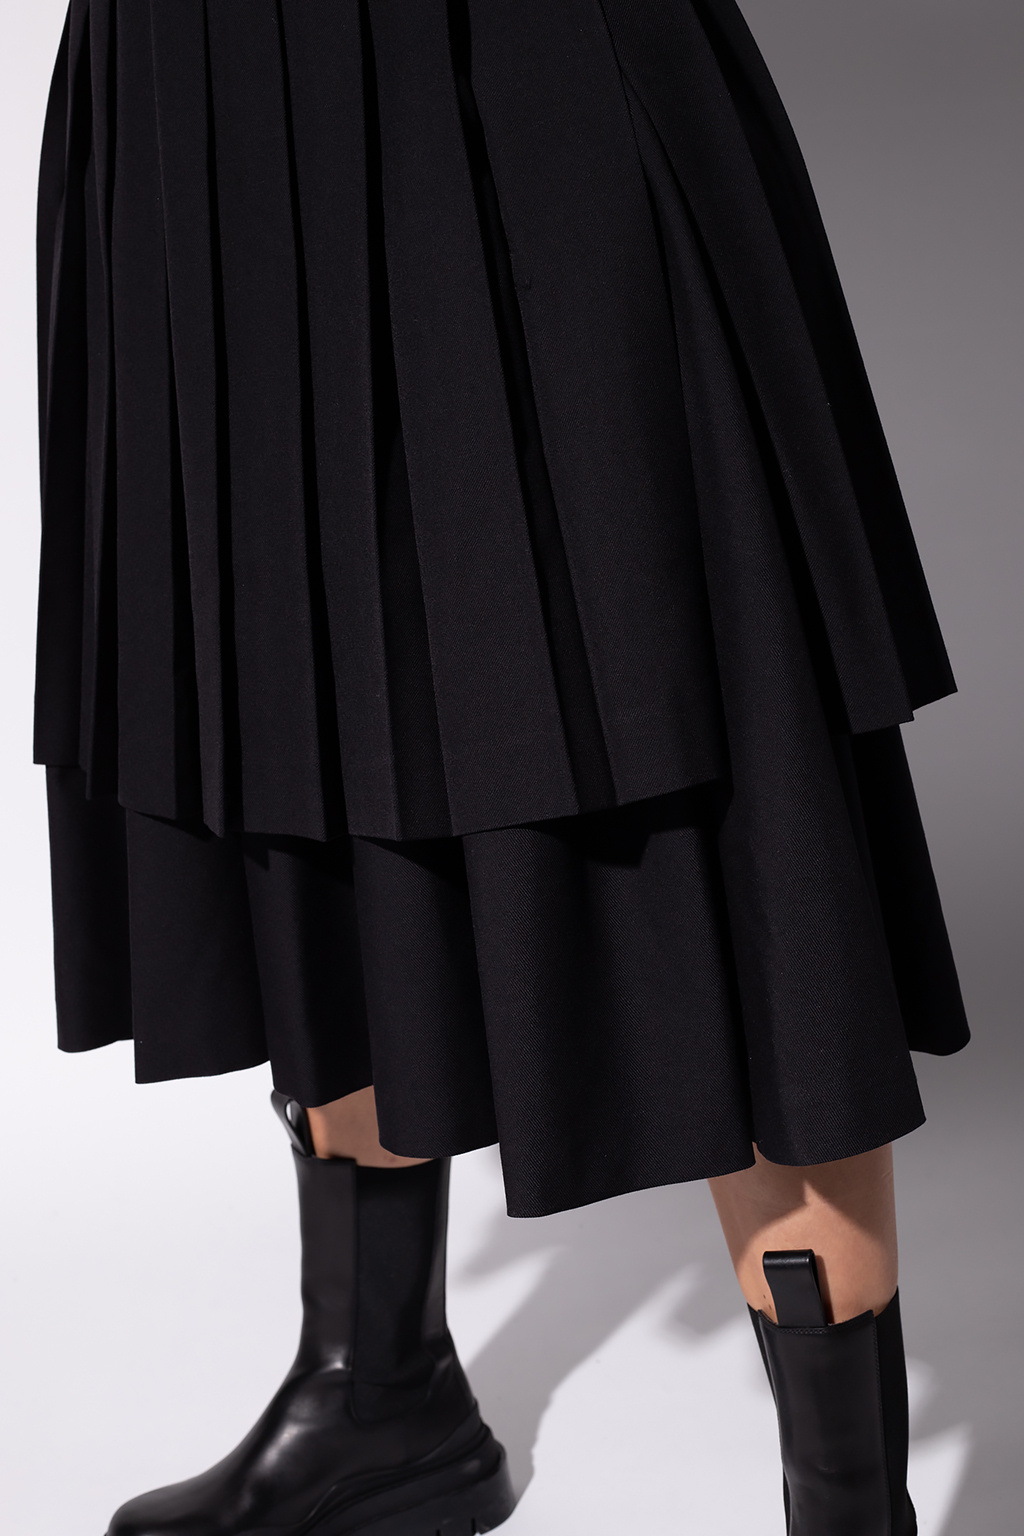 Comme des Garçons Noir Kei Ninomiya Double-layered skirt | Women's